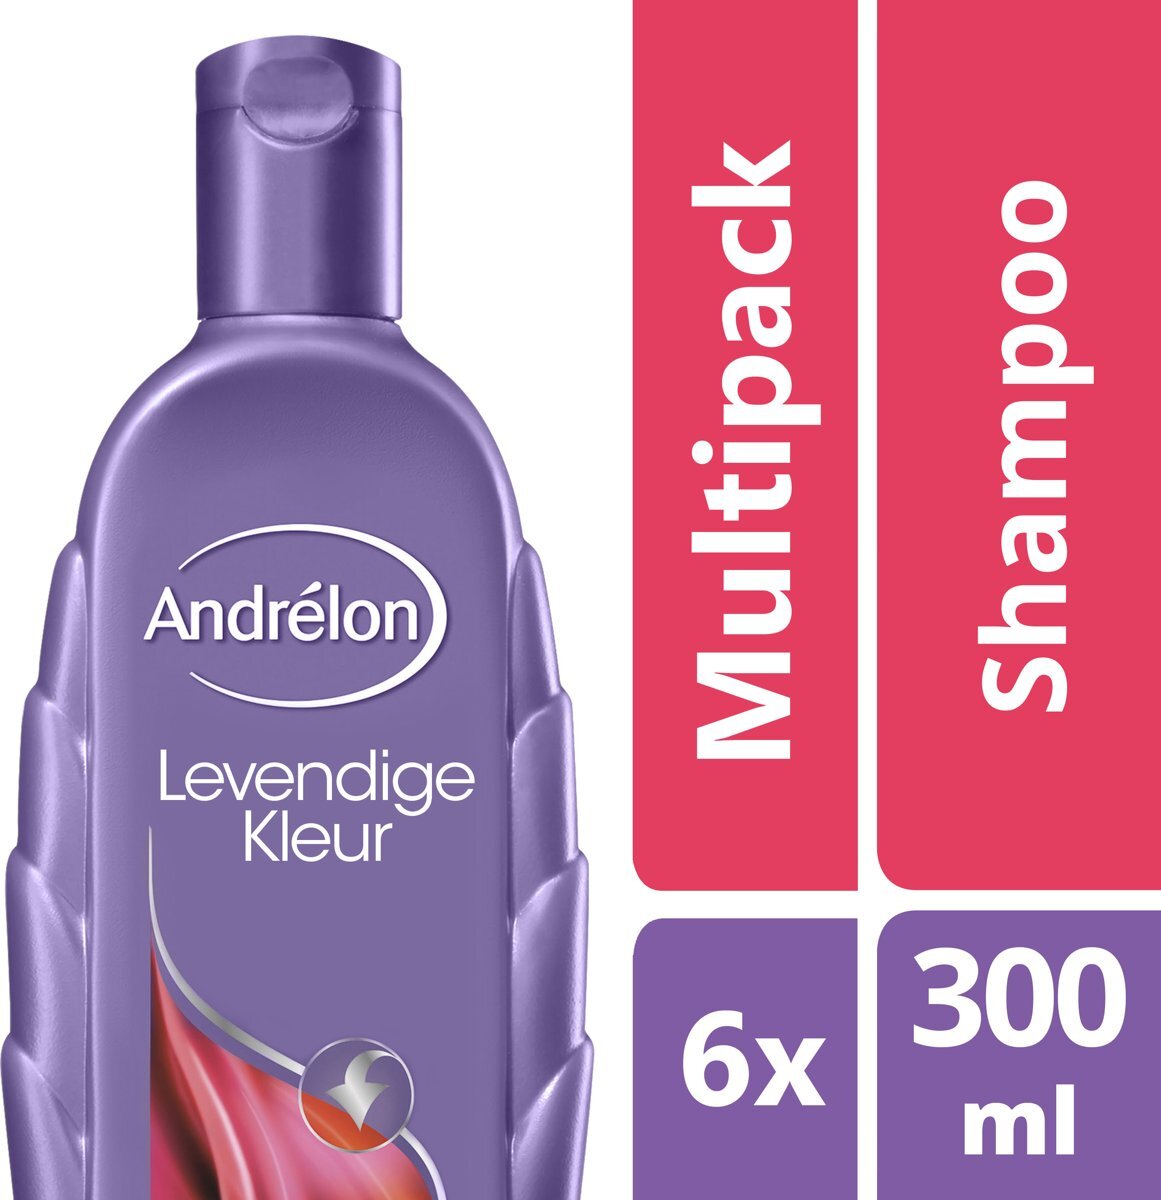 AndrÃ©lon Levendige Kleur - 6 x 300 ml - Shampoo - Voordeelverpakking